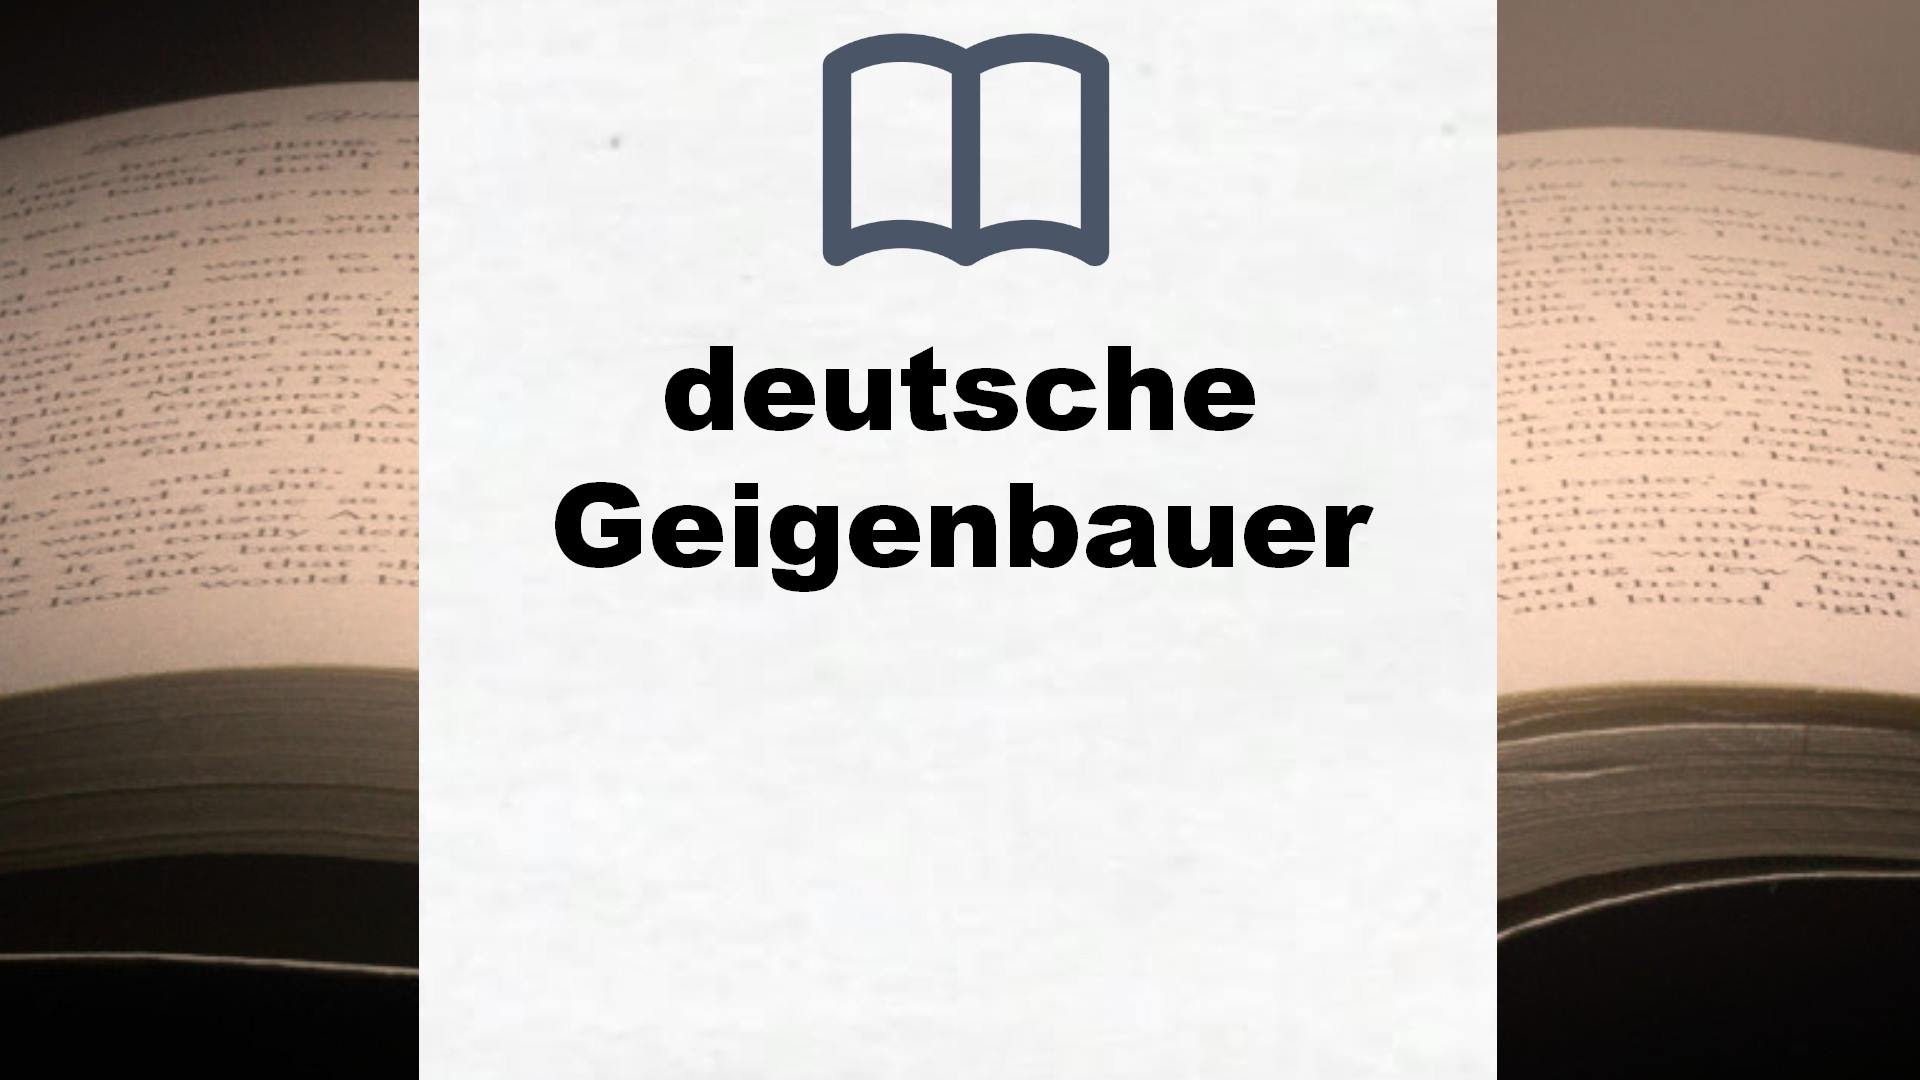 Bücher über deutsche Geigenbauer